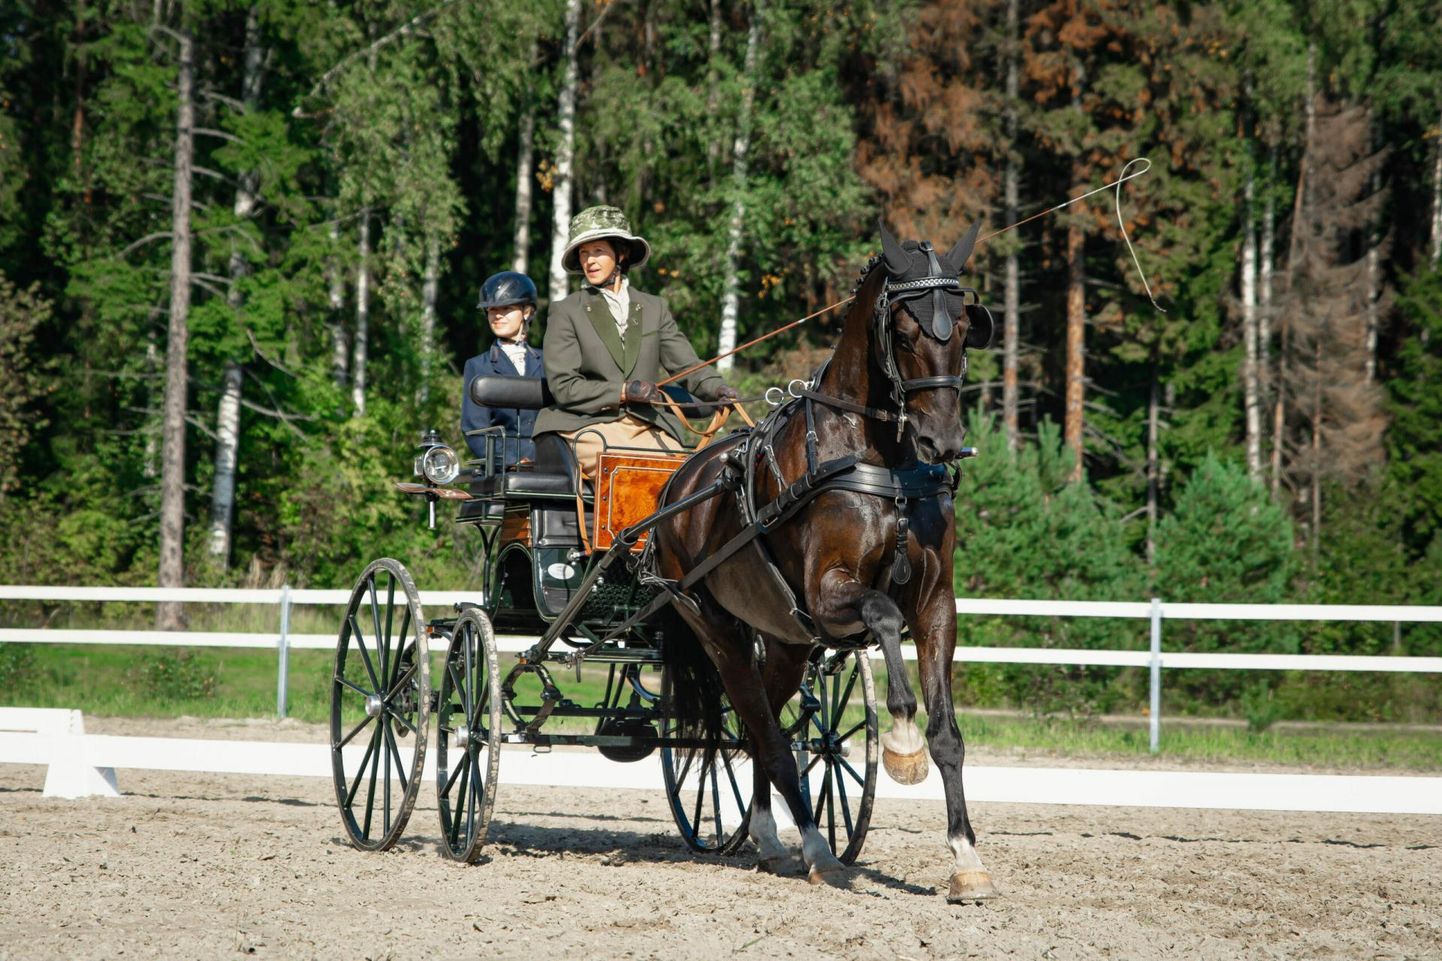 CHI Pärnu ratsaspordifestivalil on võistlustules rakendisportlased.